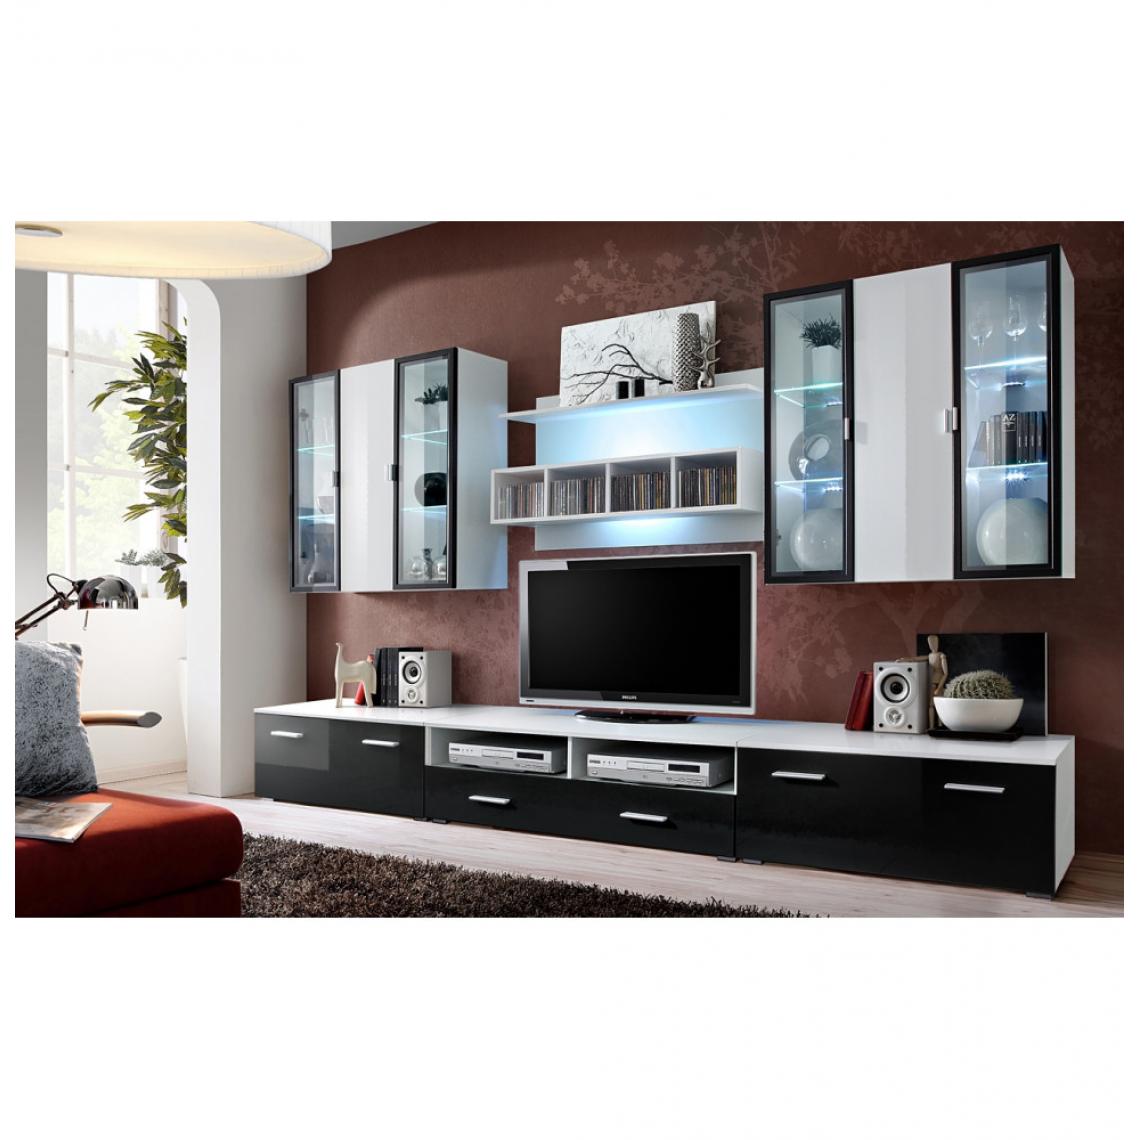 Ac-Deco - Ensemble meuble TV mural - Quadro - L 120 cm - 5 élements - Blanc et noir - Meubles TV, Hi-Fi